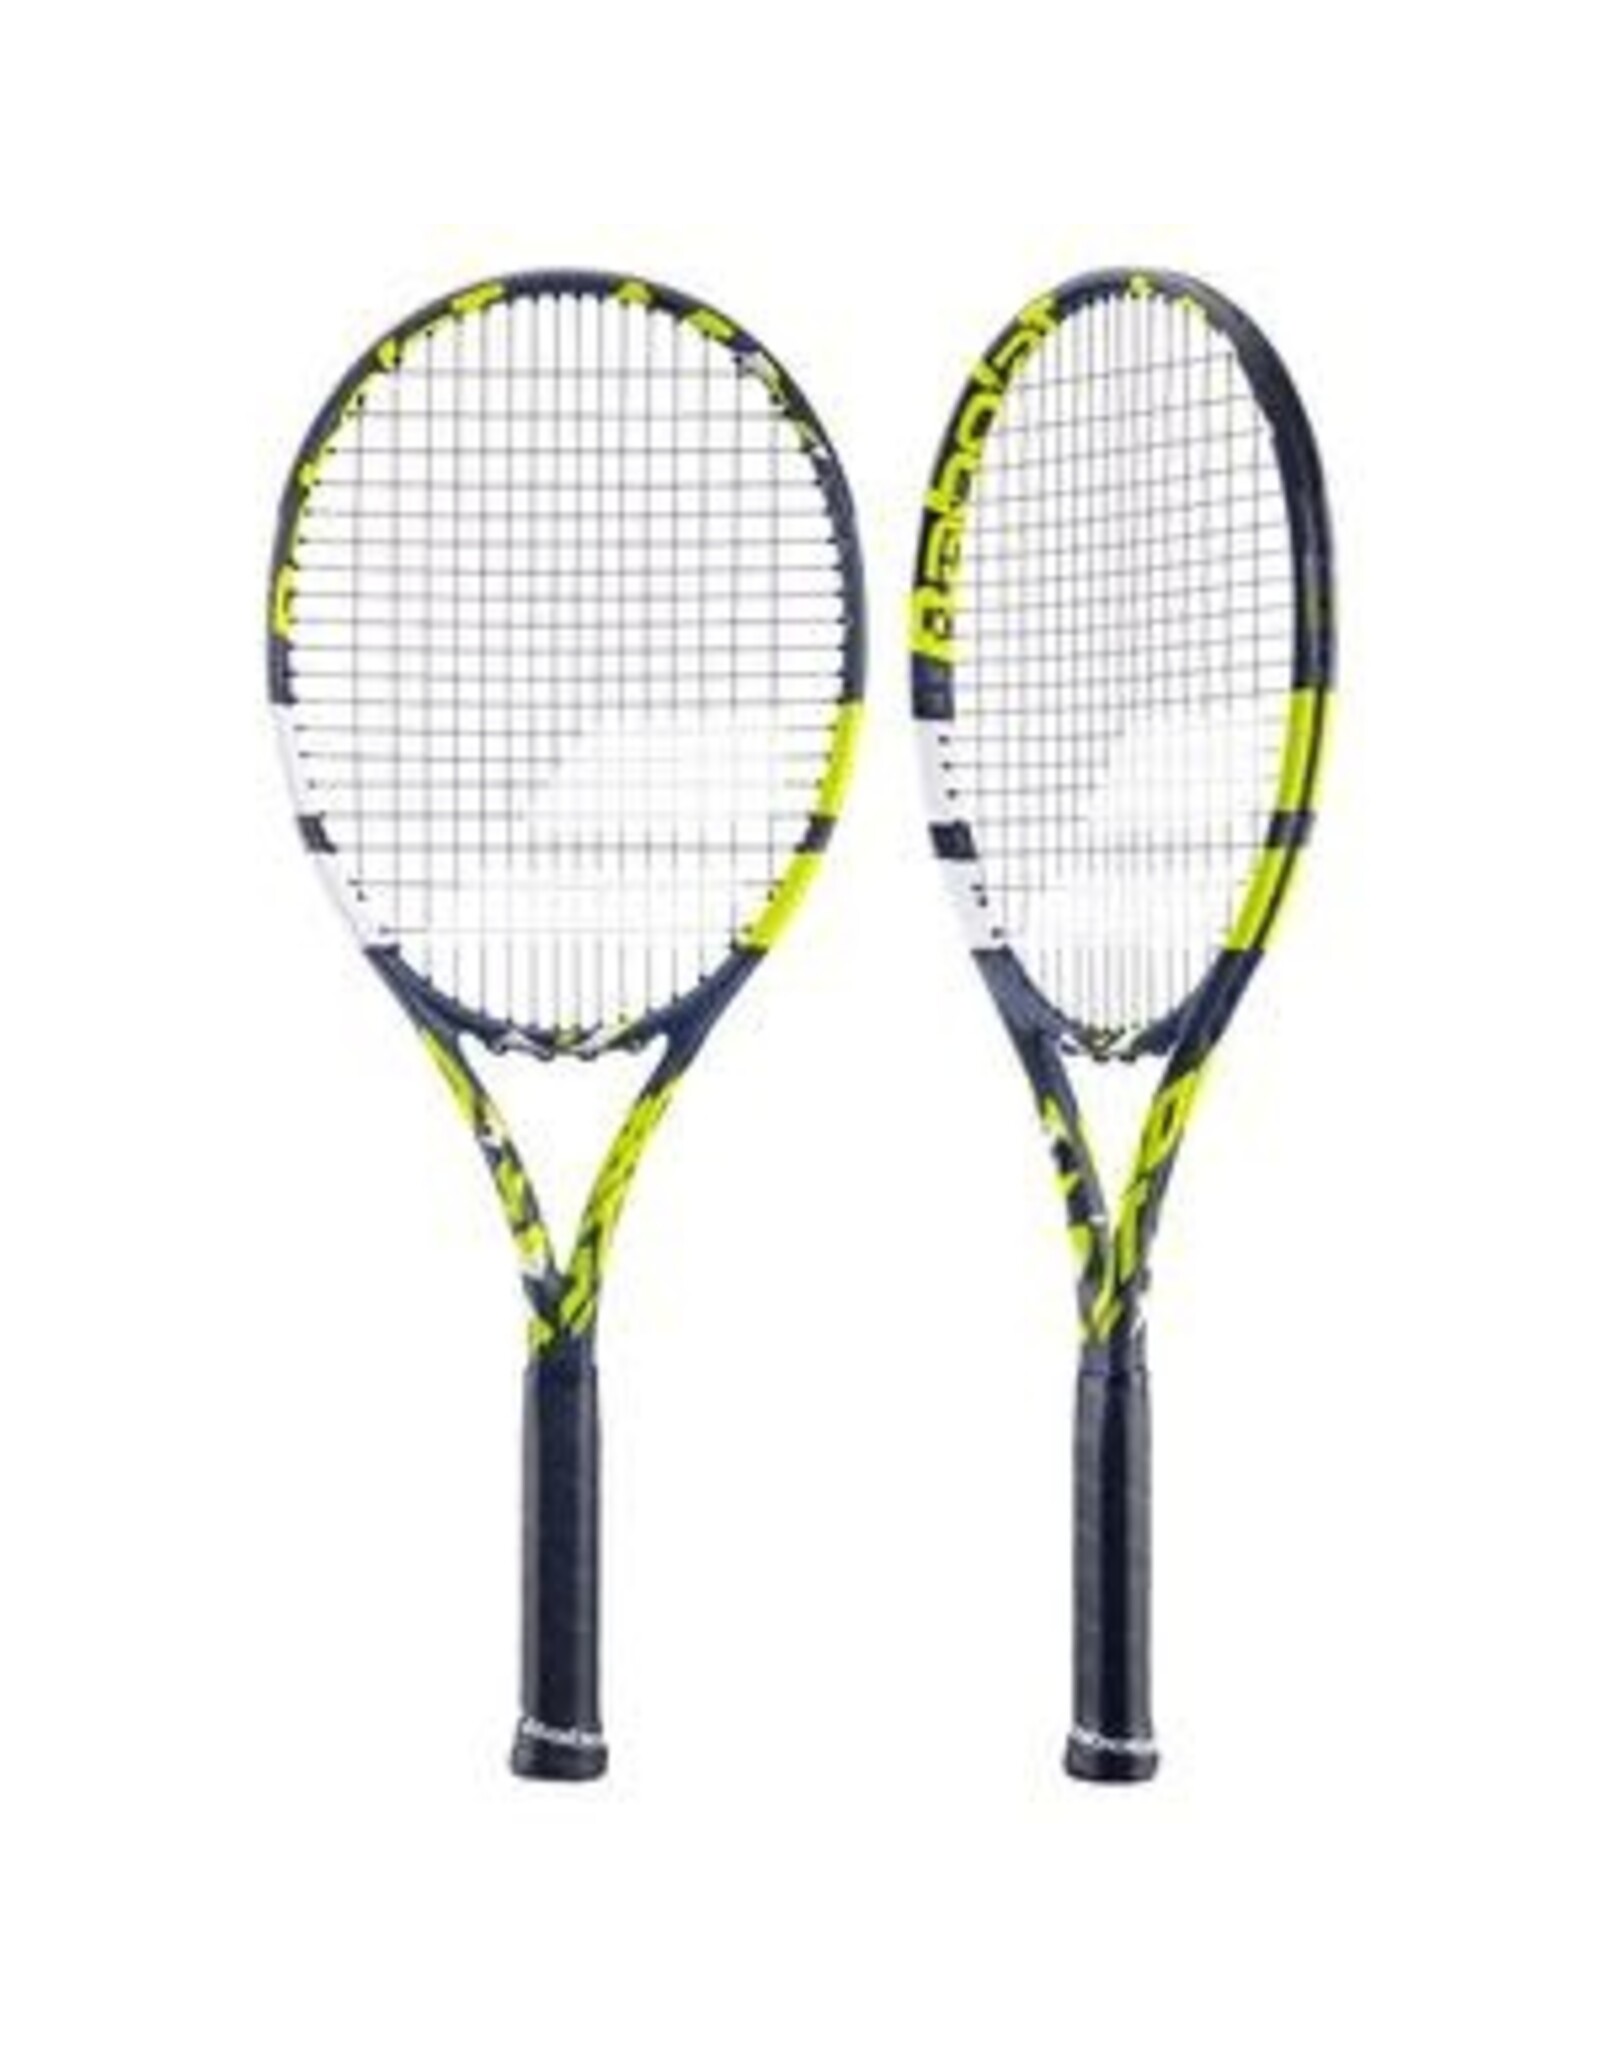 Babolat Babolat Boost Aero Tennis Racquet